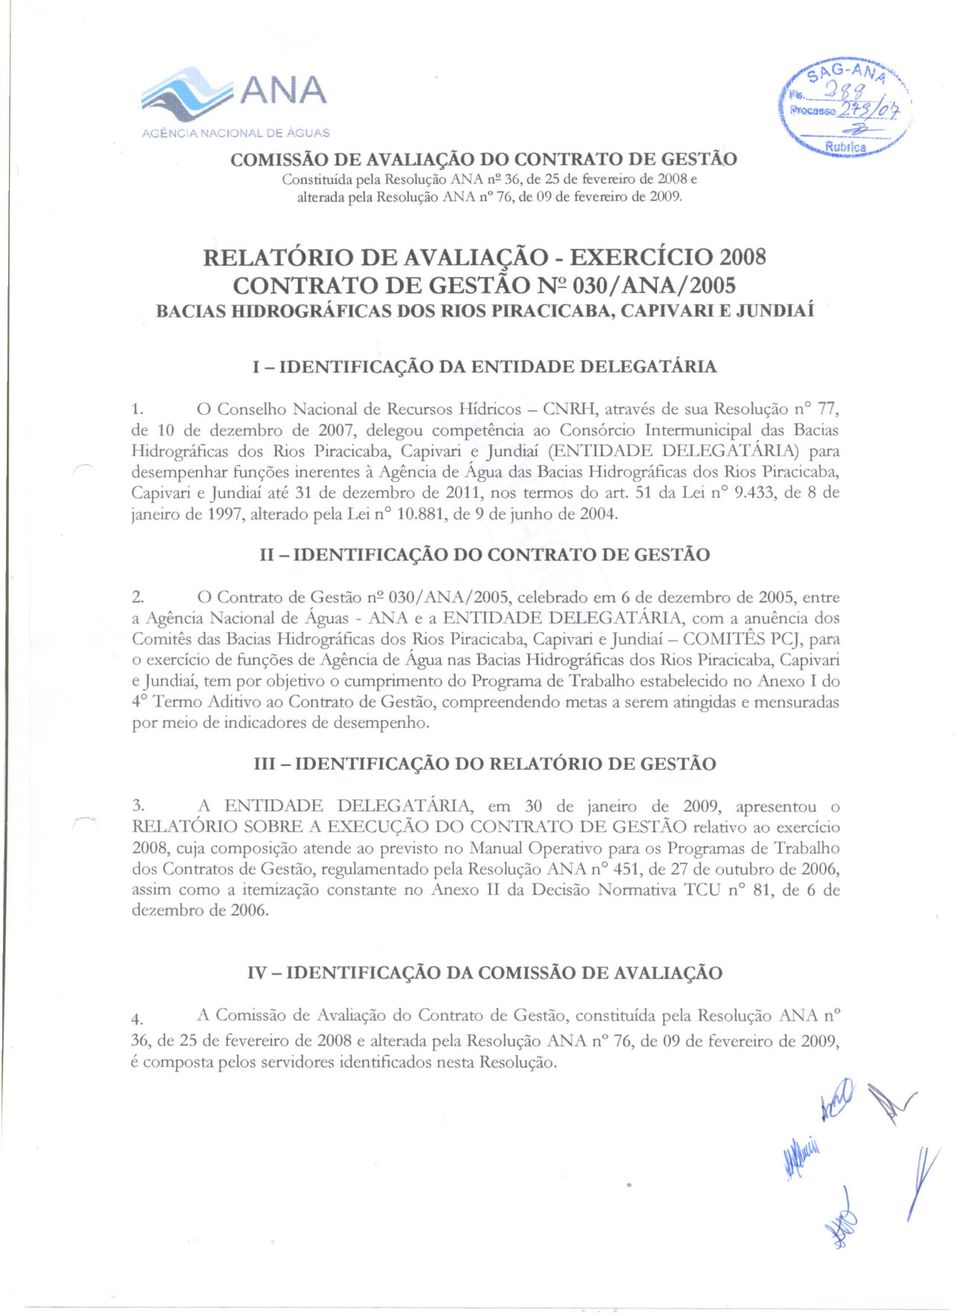 Nacional de Recursos Hídricos - CNRH, através de sua Resolução n 77, de 10 de dezembro de 2007, delegou competência ao Consórcio Intermunicipal das Bacias Hidrográficas dos Rios Piracicaba, Capivari